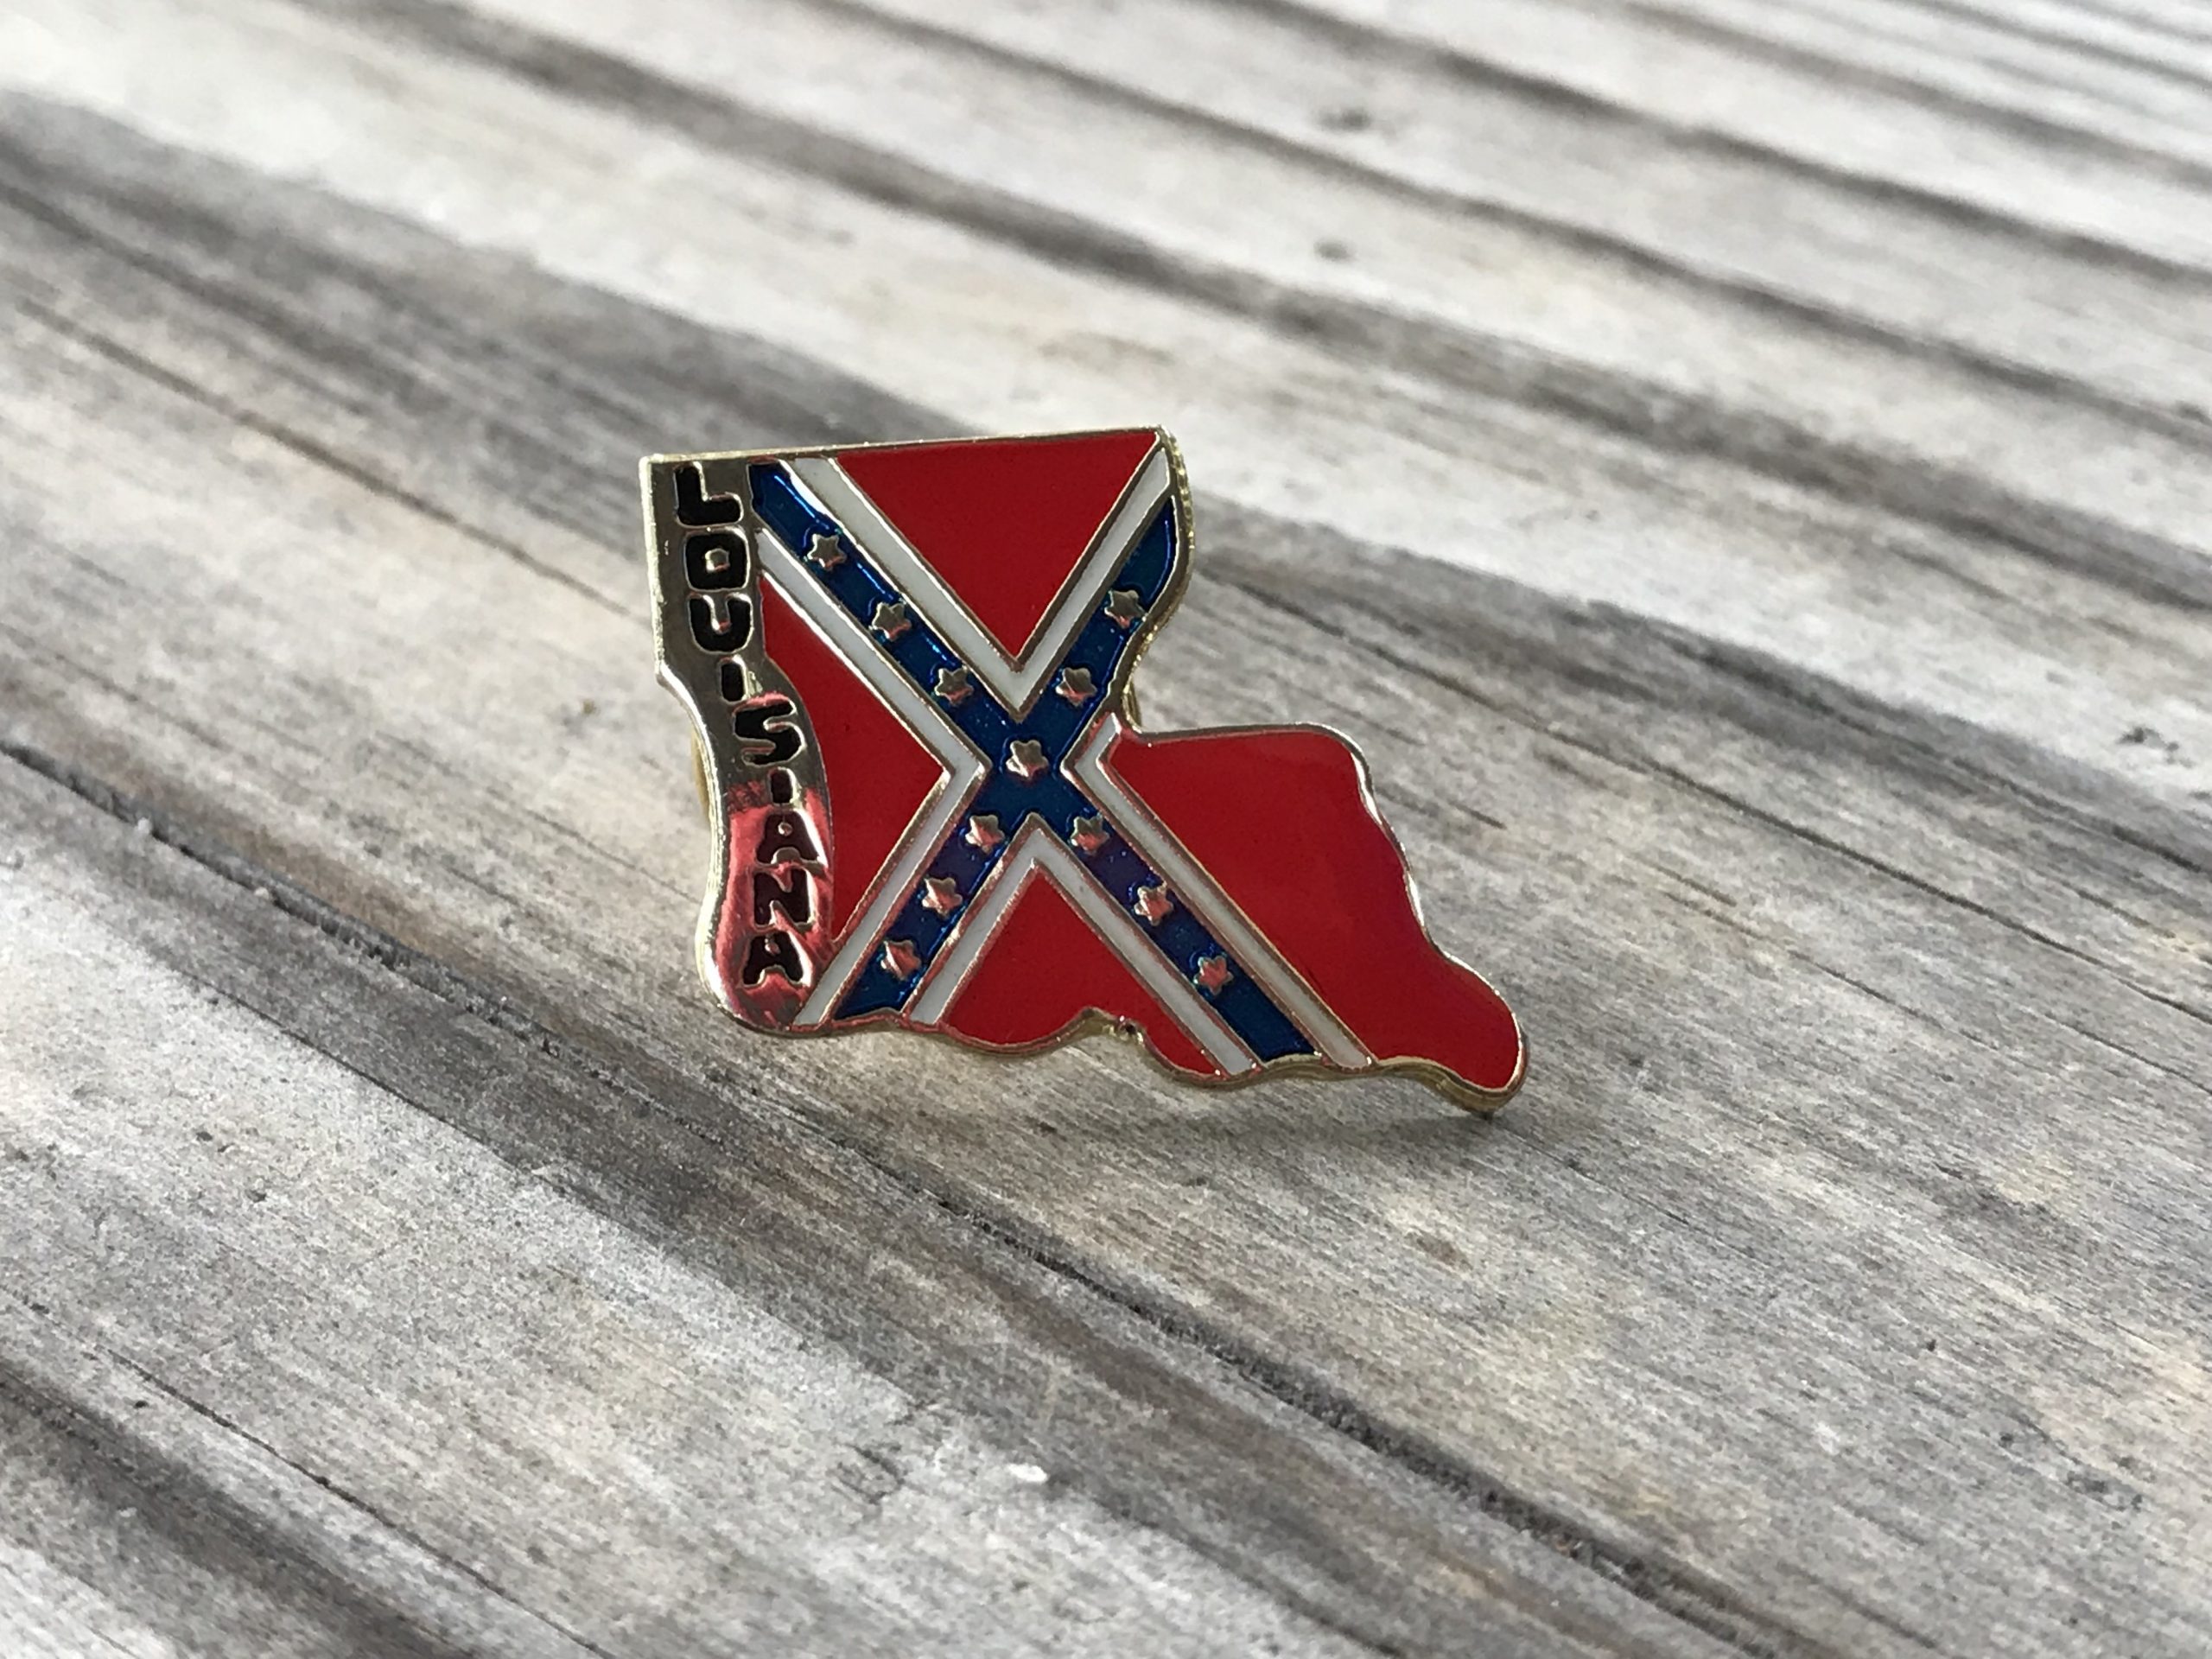 confederate flag hat pins